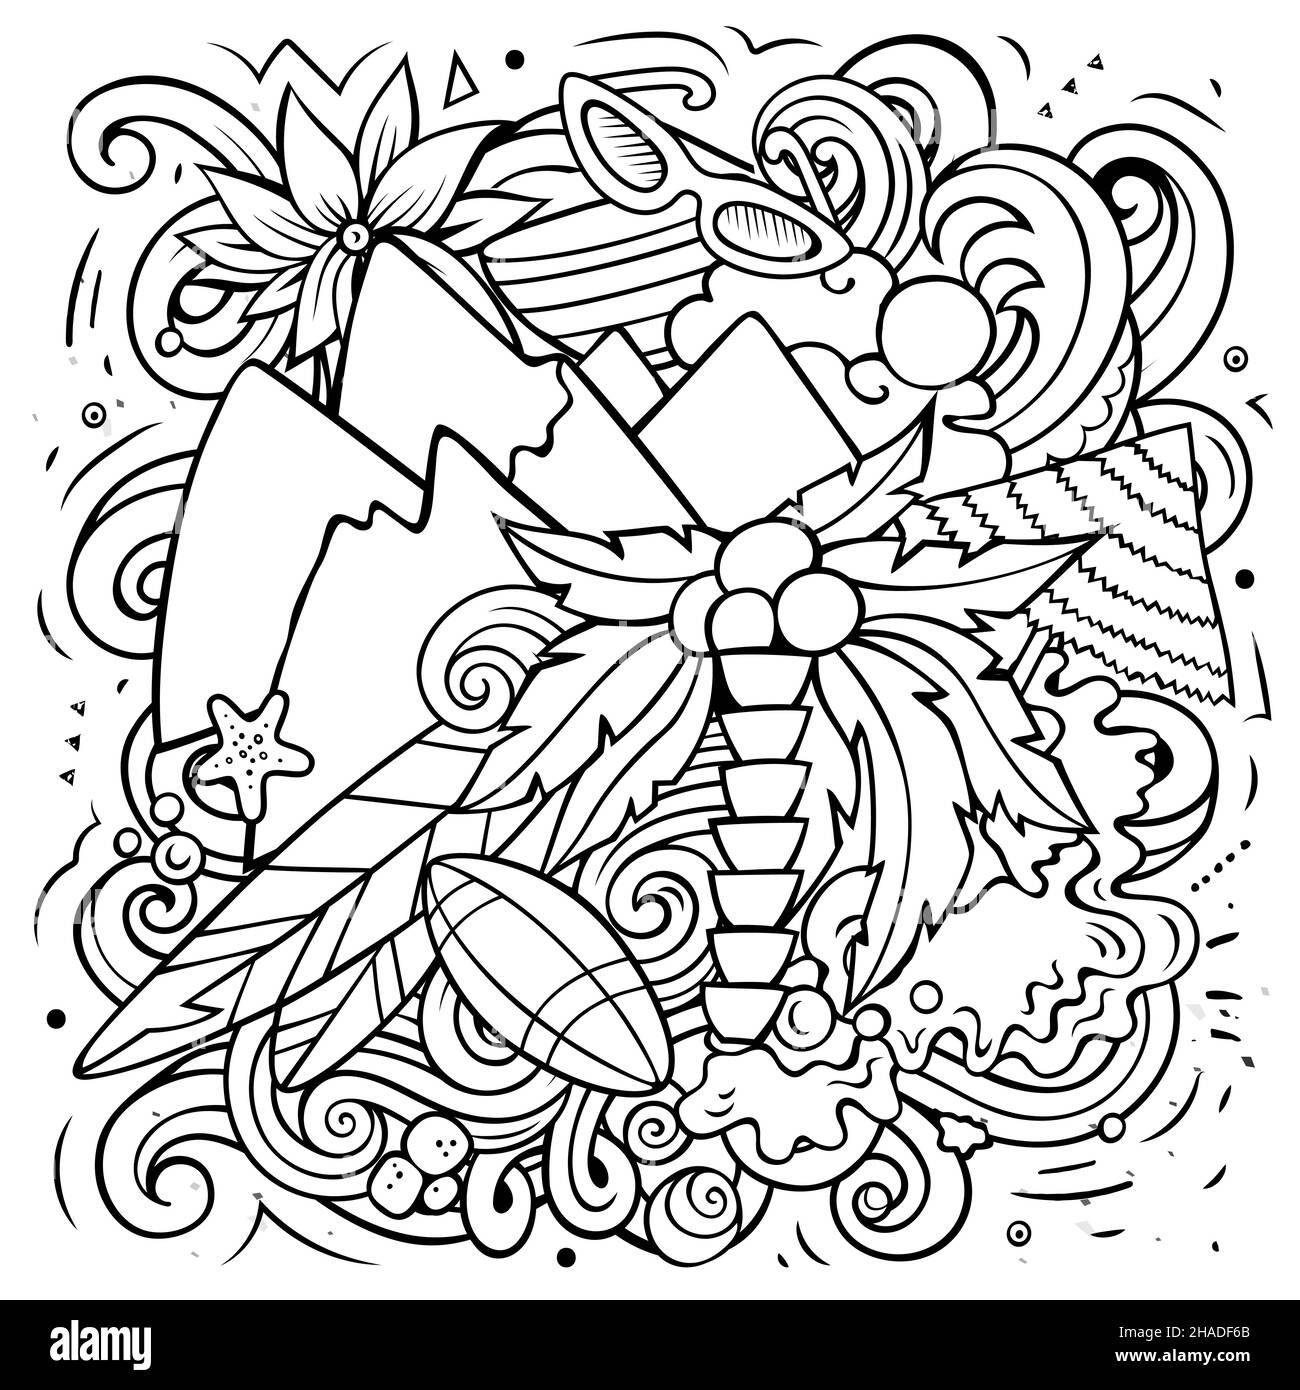 Illustrazione di fumetto vettoriale di Figi. Composizione dettagliata di schizzo con molti oggetti e simboli esotici dell'isola. Illustrazione Vettoriale